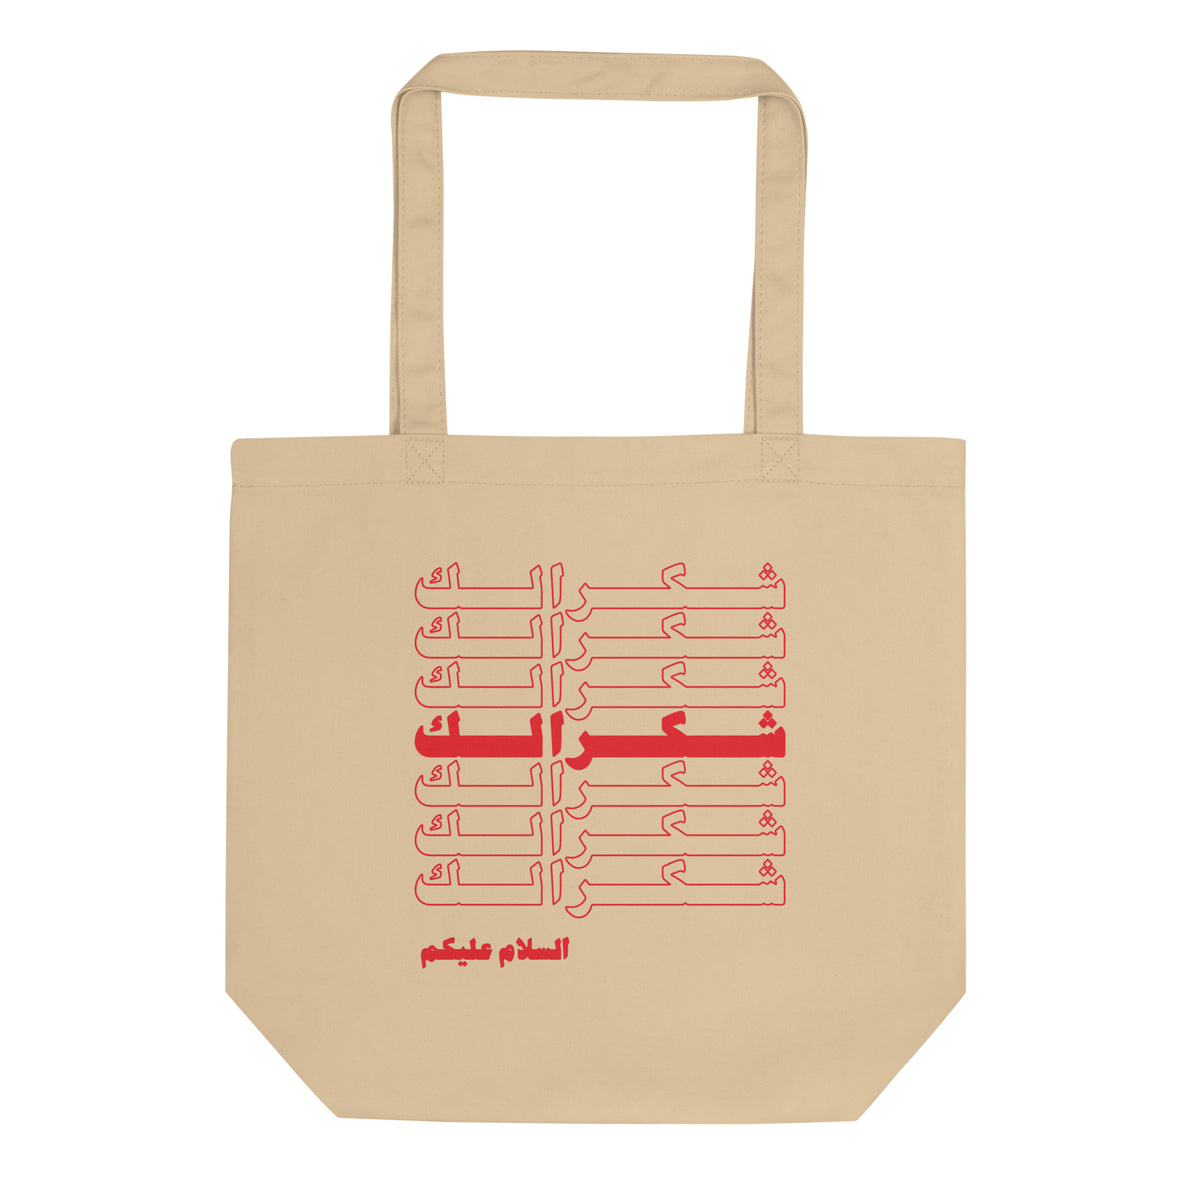 Shukran - Tote Bag